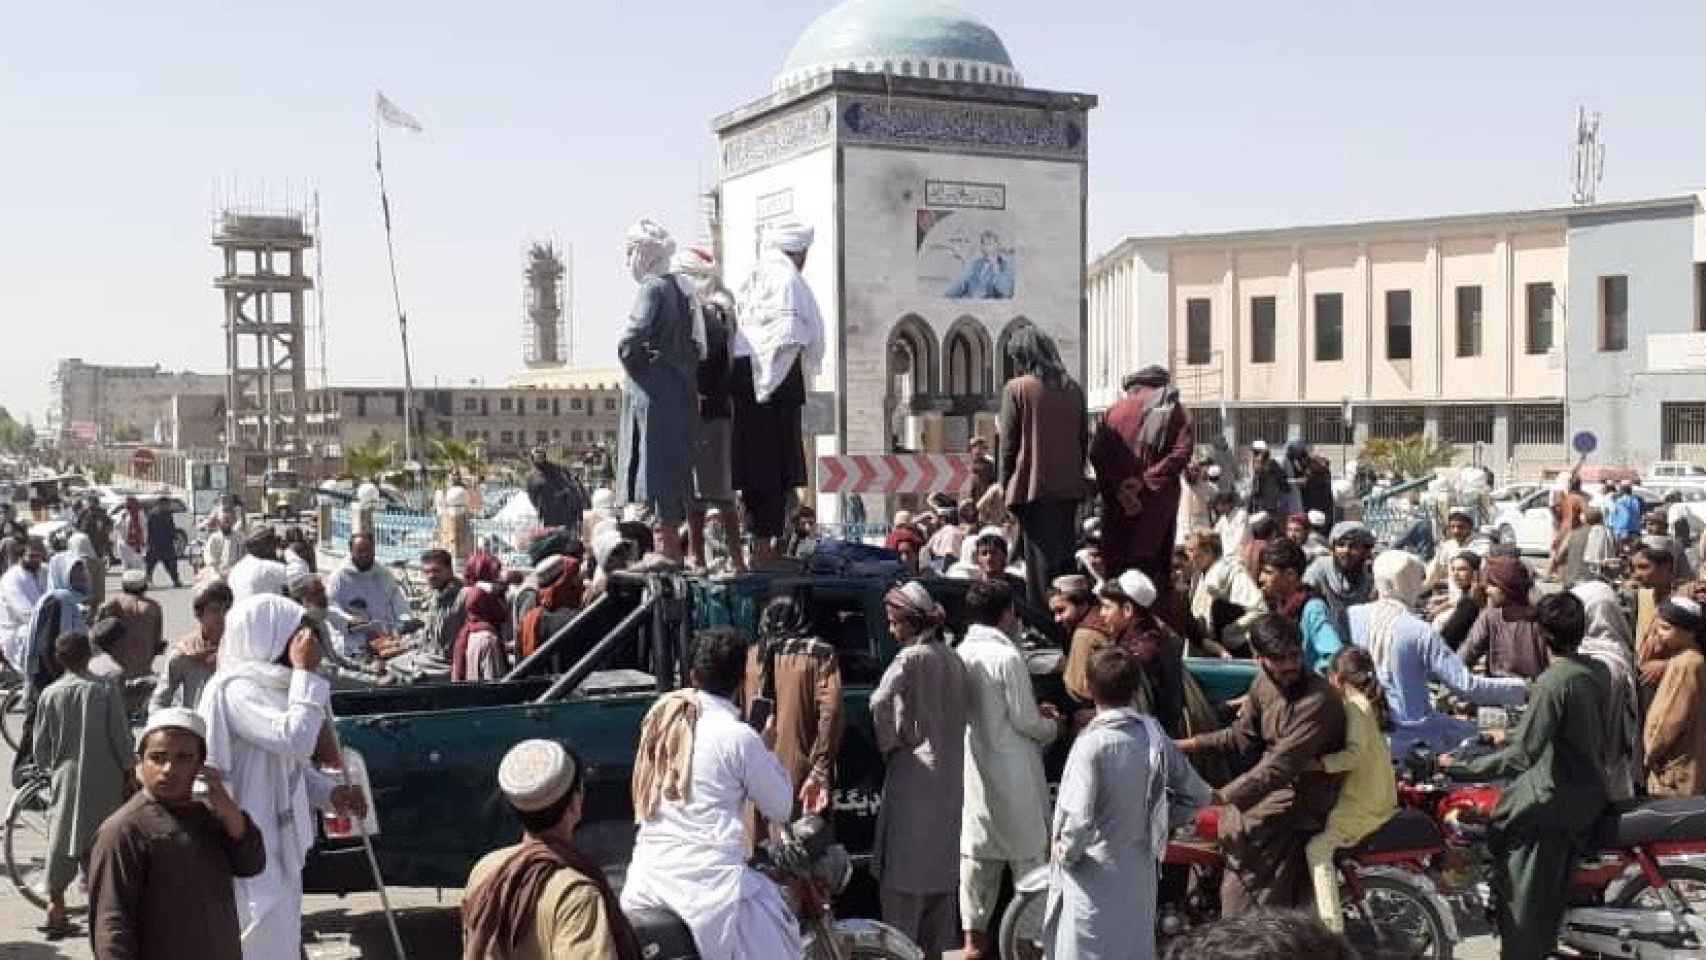 Los talibán se reúnen en la plaza de Kandahar, Afganistán, ciudad clave que conquistaron.